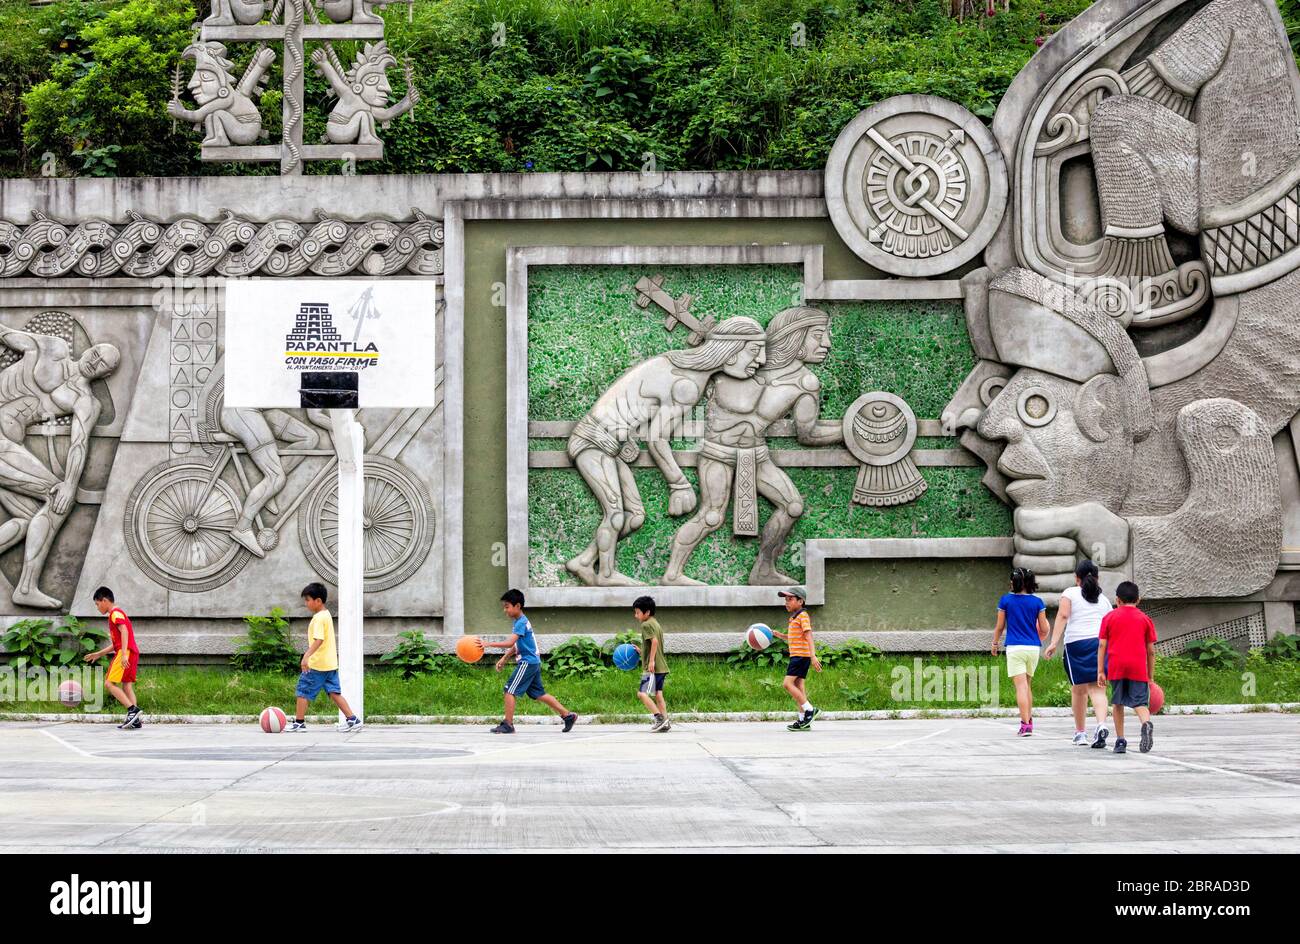 Kinder üben Basketball umgeben von Erinnerungen an ihr Erbe in Papantla, Veracruz, Mexiko. Stockfoto